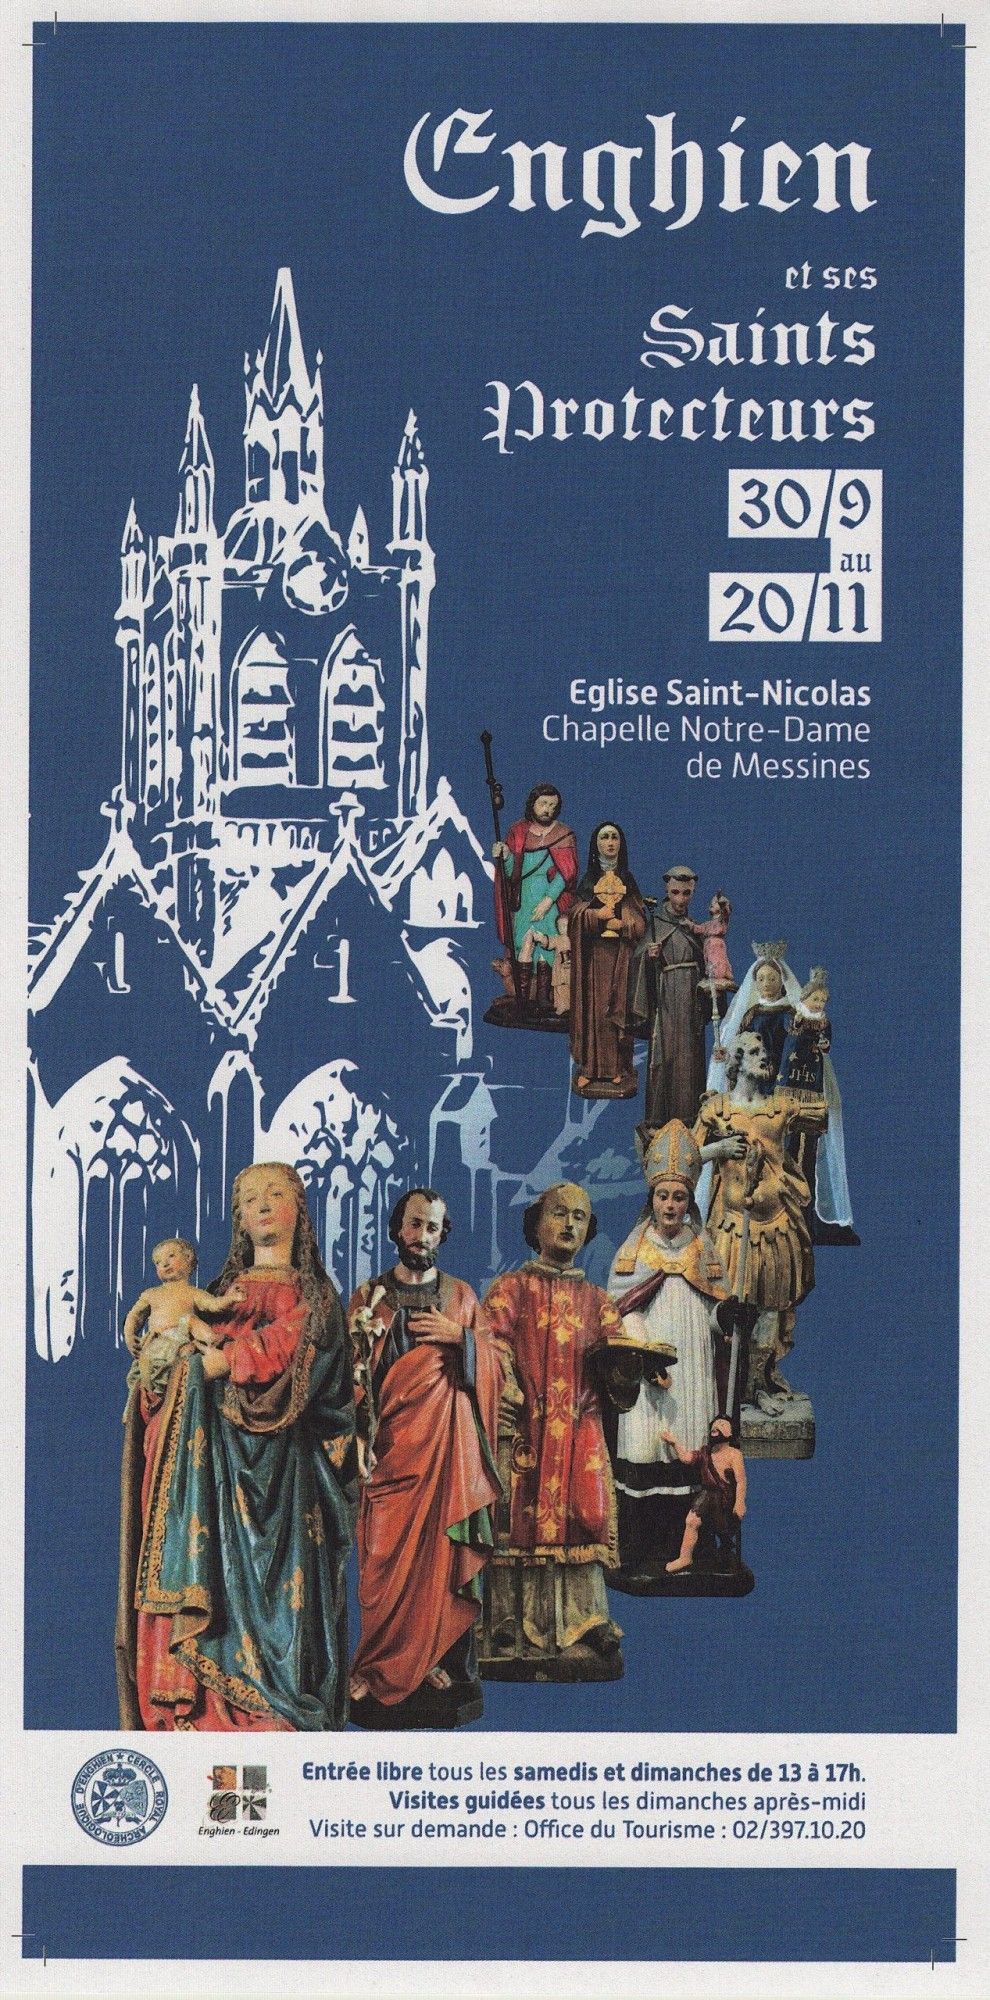 Enghien and its patron saints